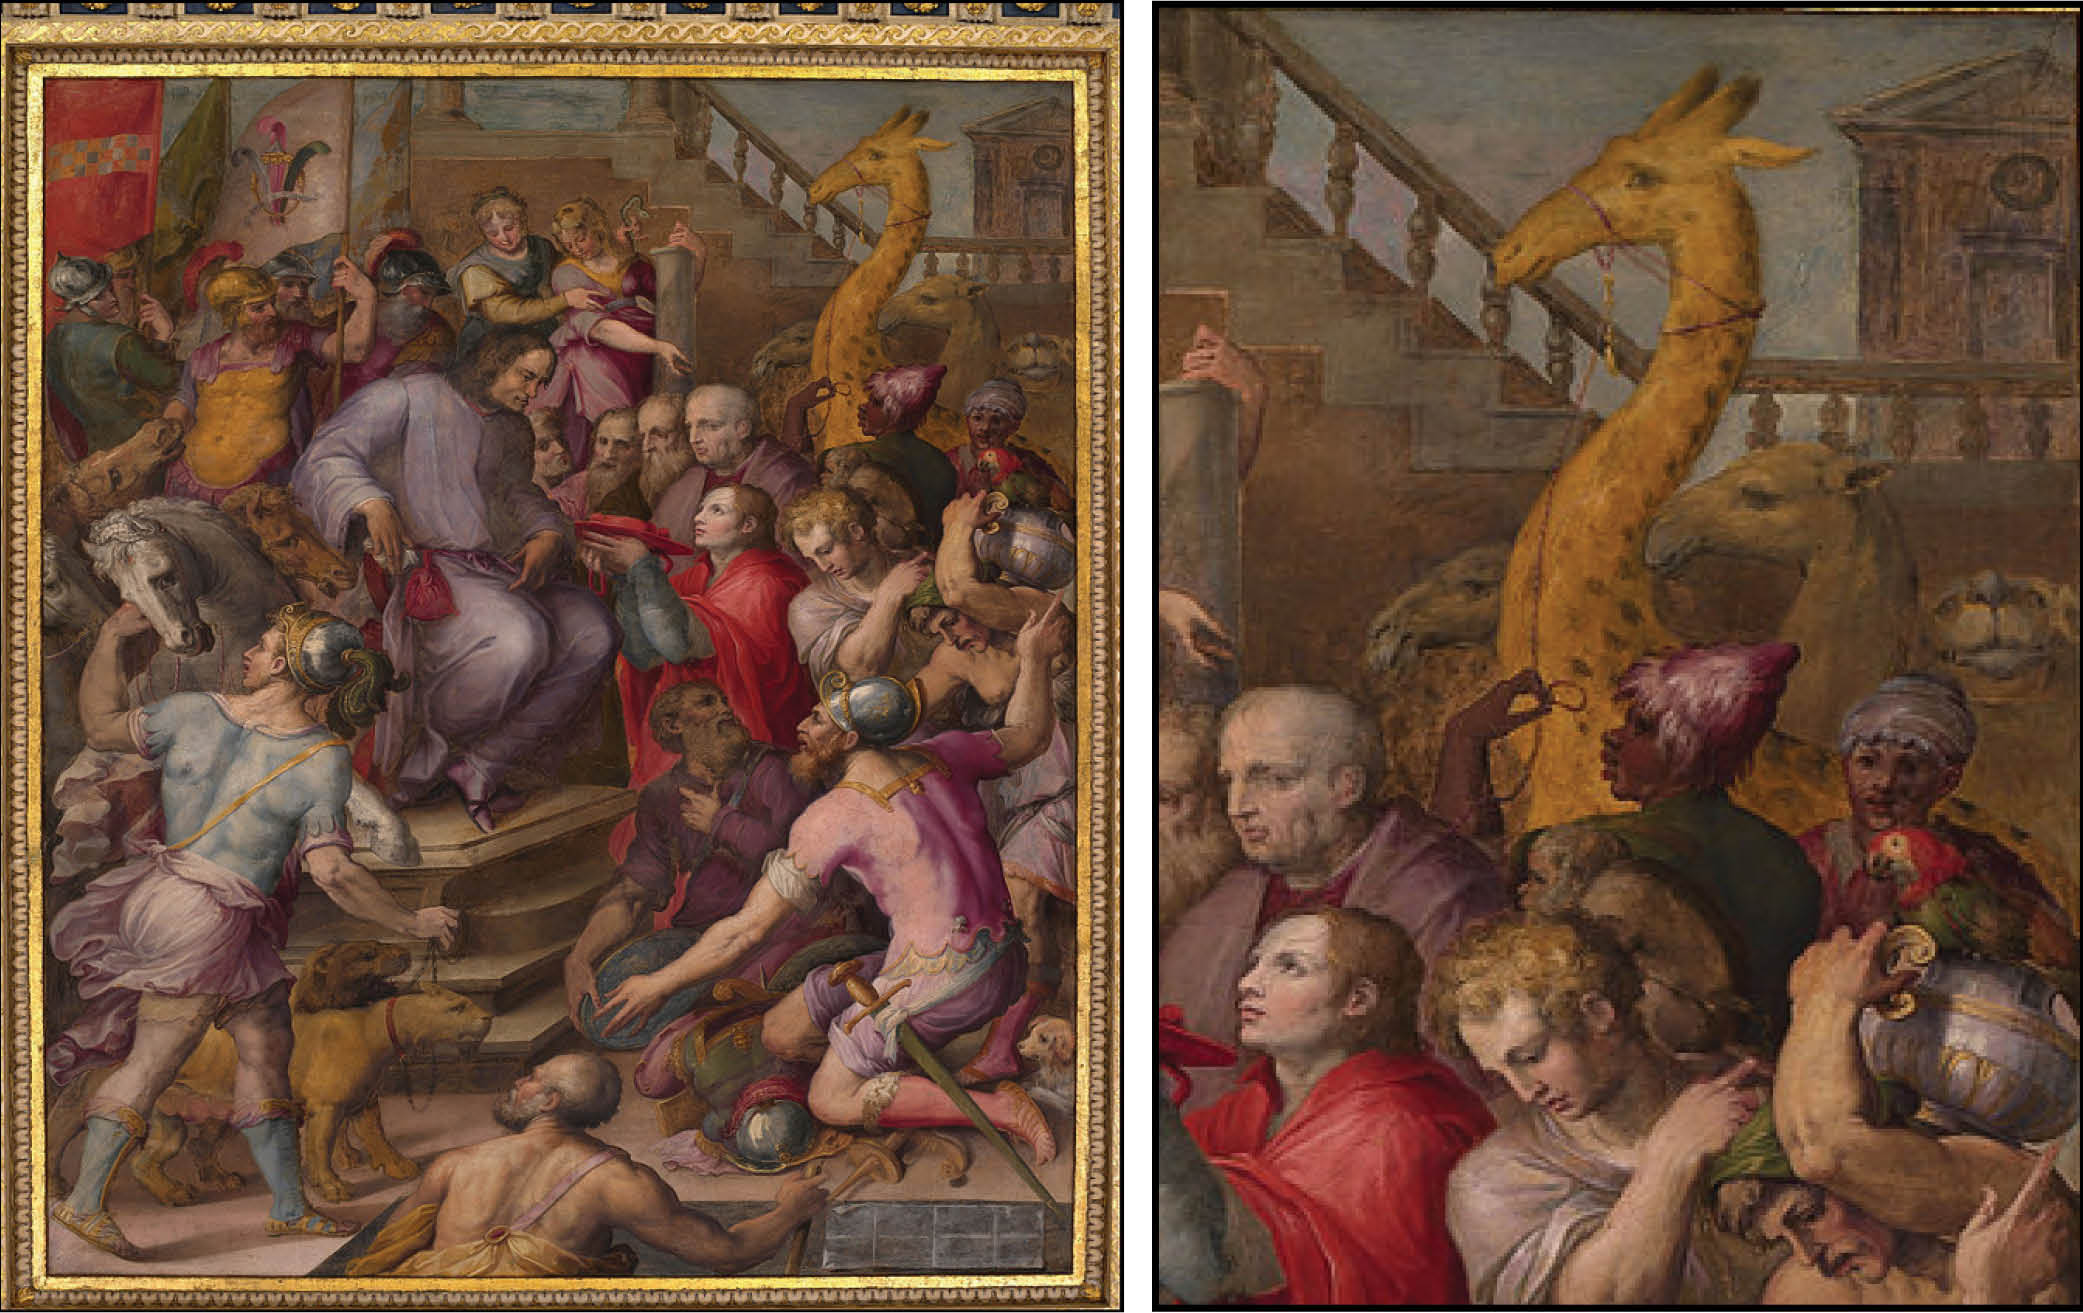 Giorgio Vasari, Lorenzo the Magnificent (c. 1555). Florence, Palazzo Vecchio. (Detail shown on right)